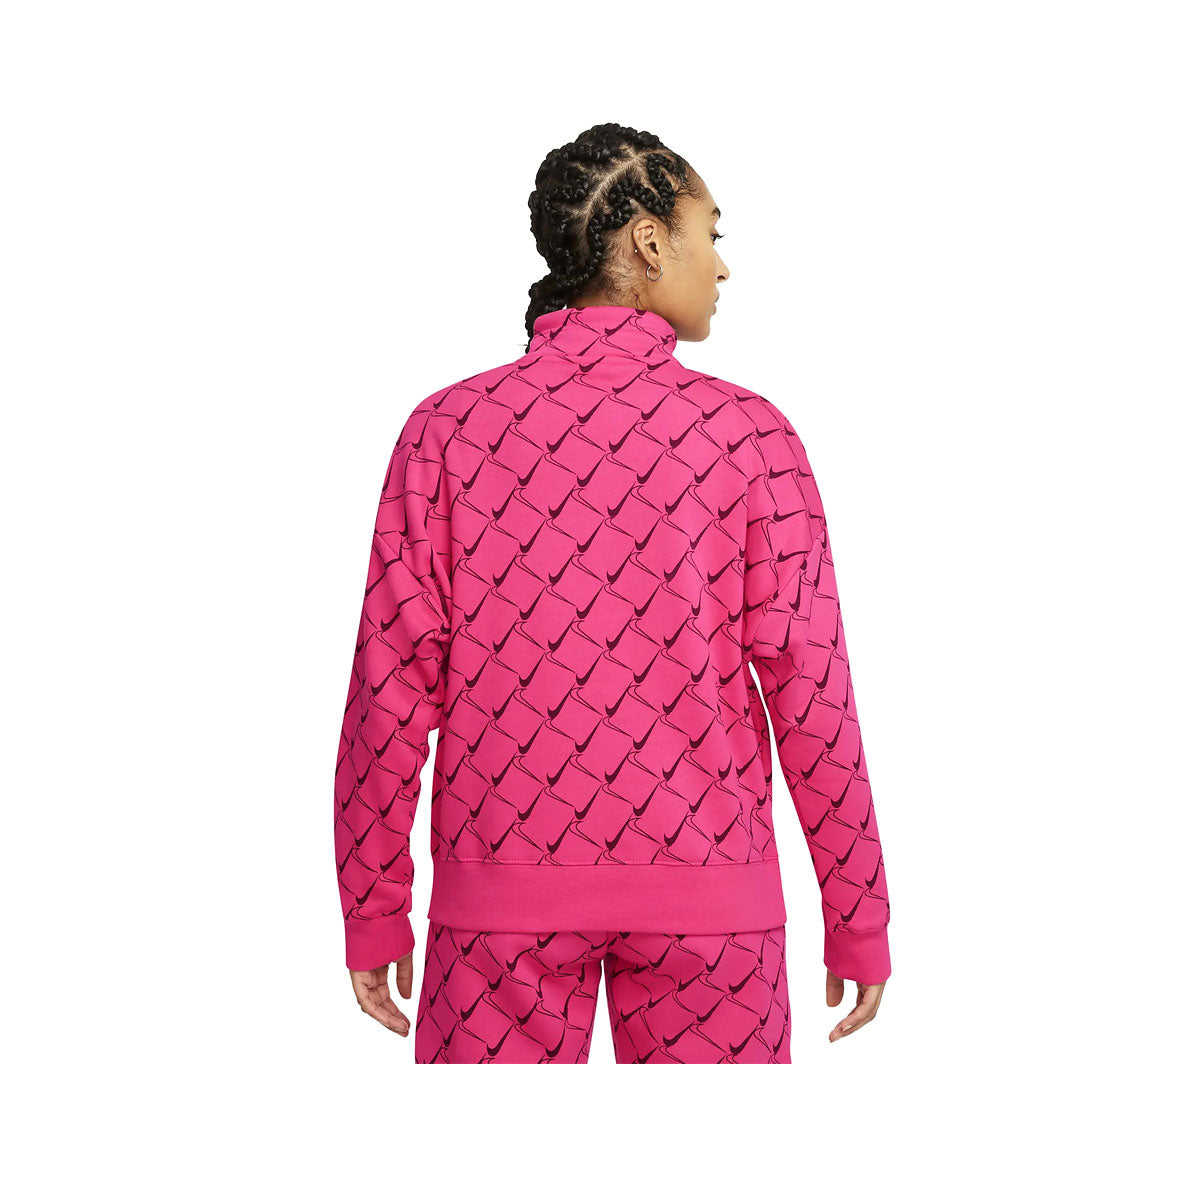 Nike Women's Sportswear - Fleece 1/4-Zip Top